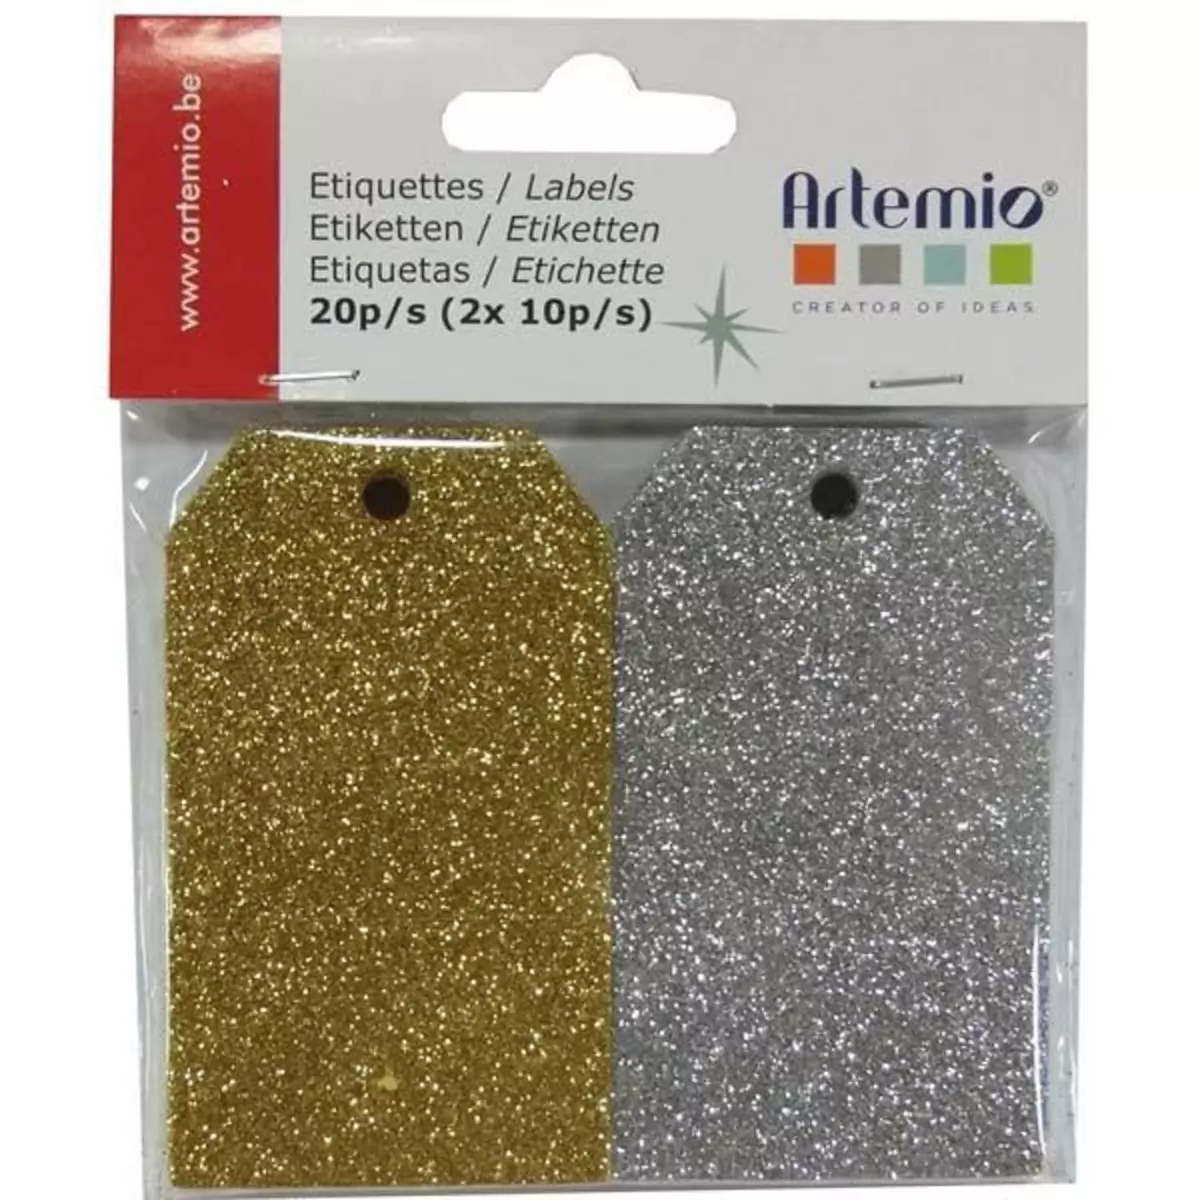 Artemio 20 étiquettes à paillettes dorées & argentées